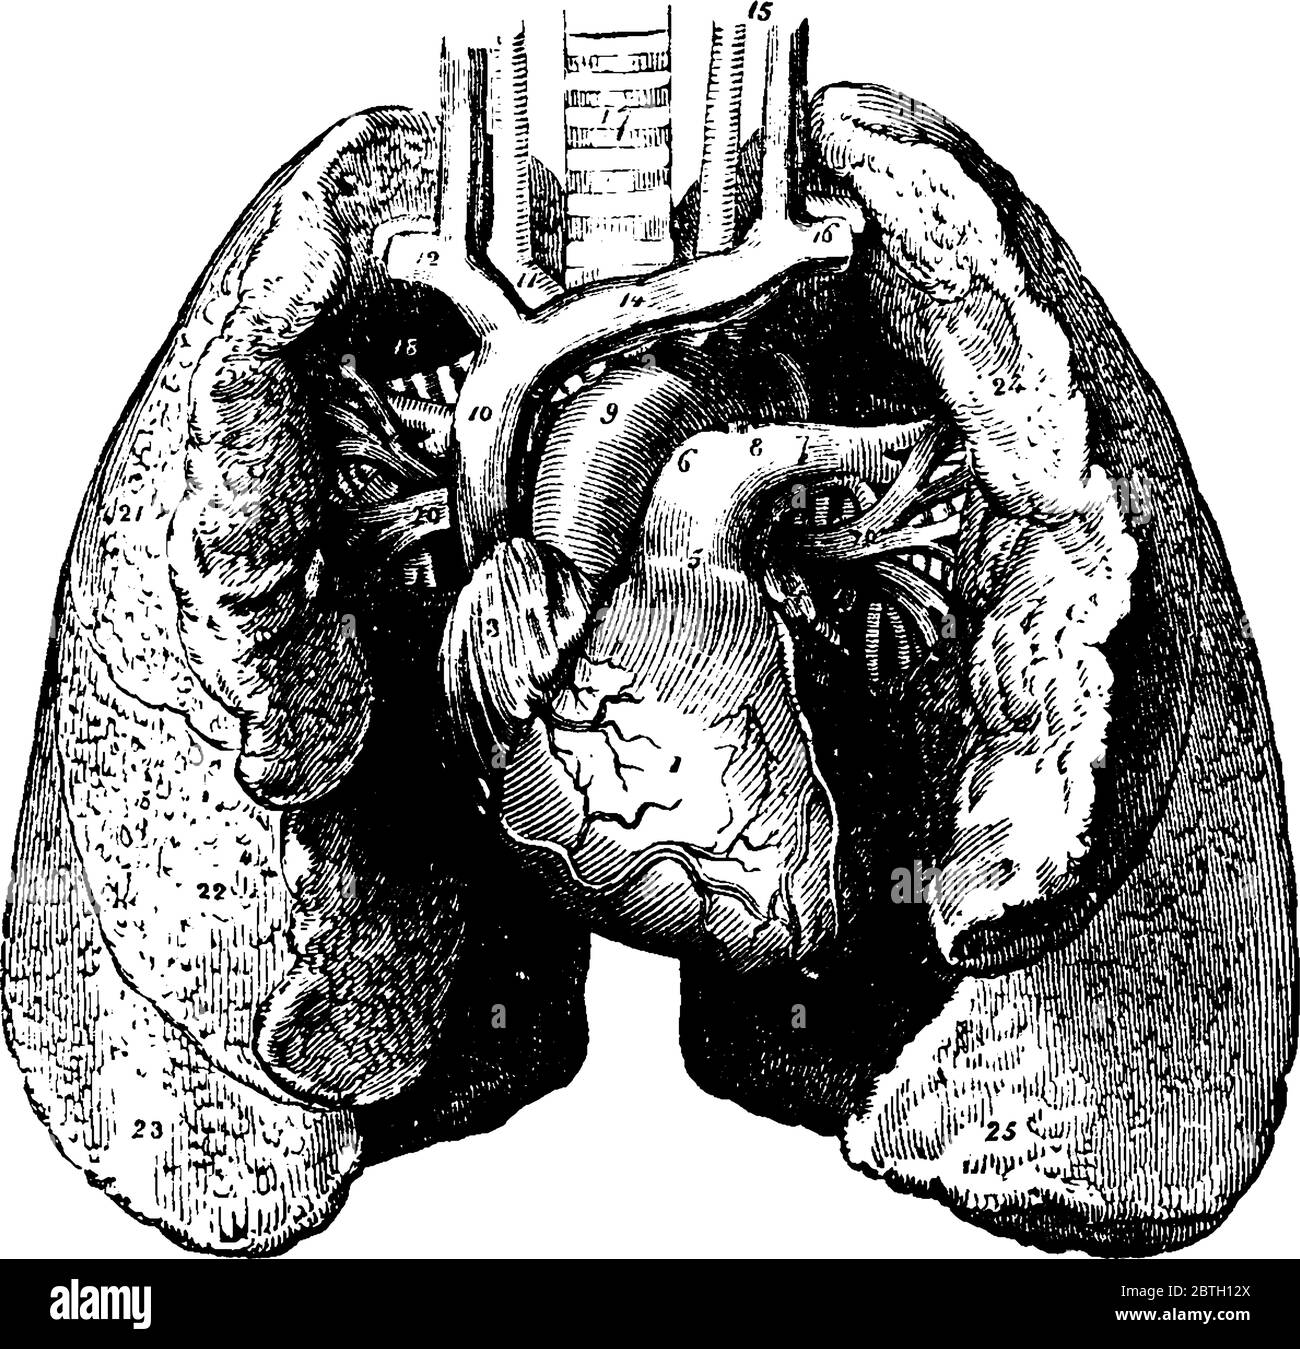 Eine typische Darstellung des Herzens und der Lunge, mit ihren Teilen beschriftet, Vintage-Strichzeichnung oder Gravur Illustration. Stock Vektor